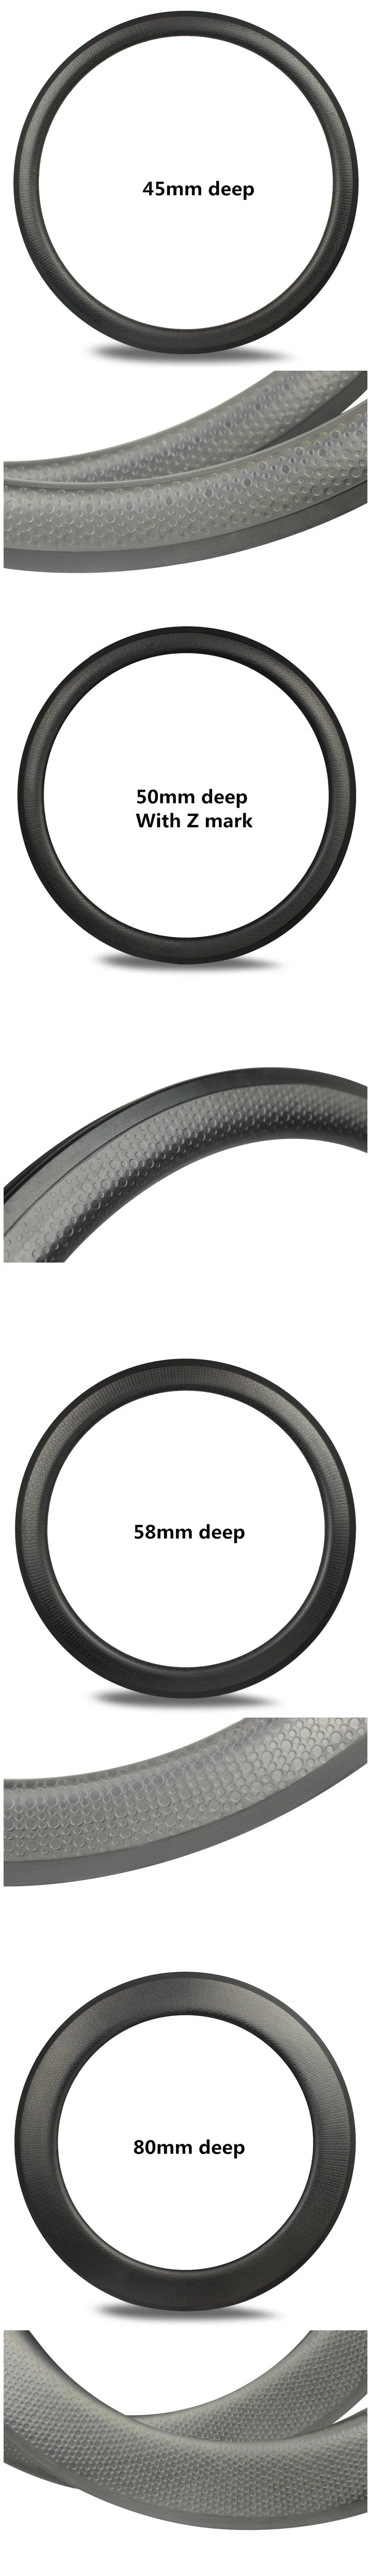 80 мм Глубина ямочка углерода диски базальт торможение поверхность стиль высокий TG углеродного волокна Moon surfce углерода диски